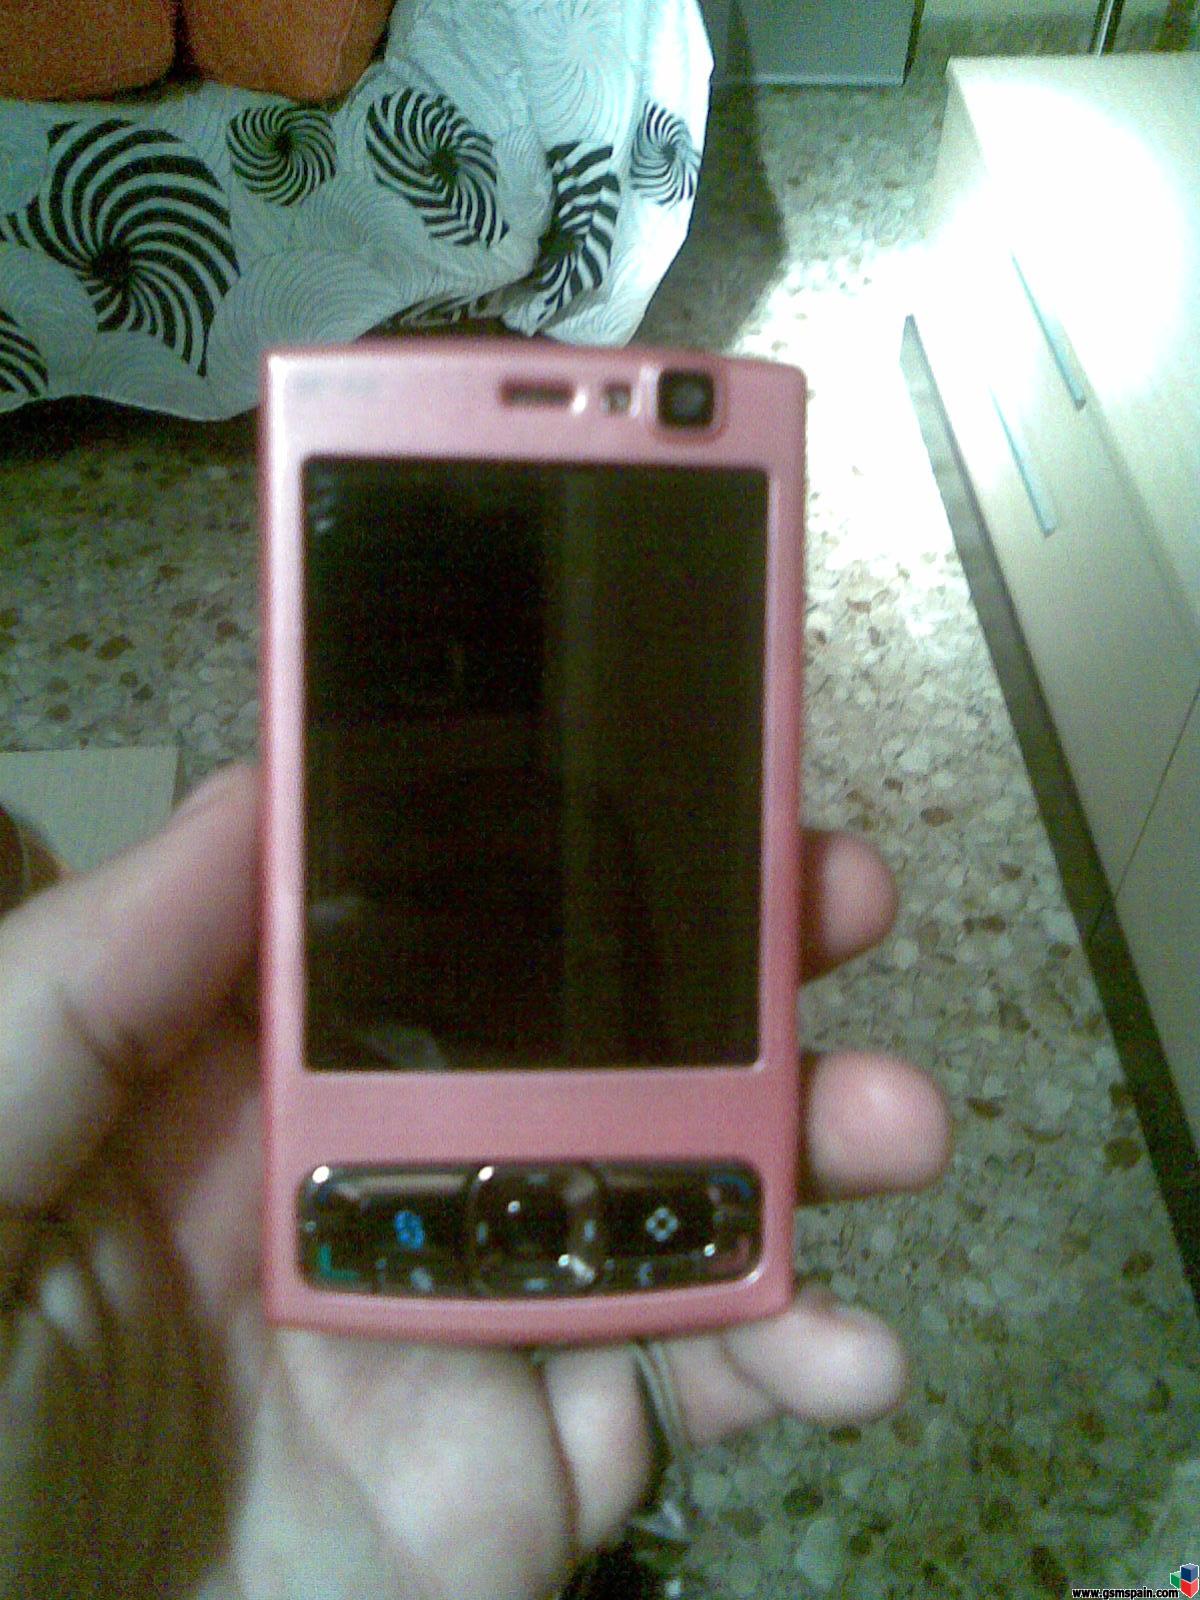 Nokia N95 8gigas Rosaaaa!!!!!!!!